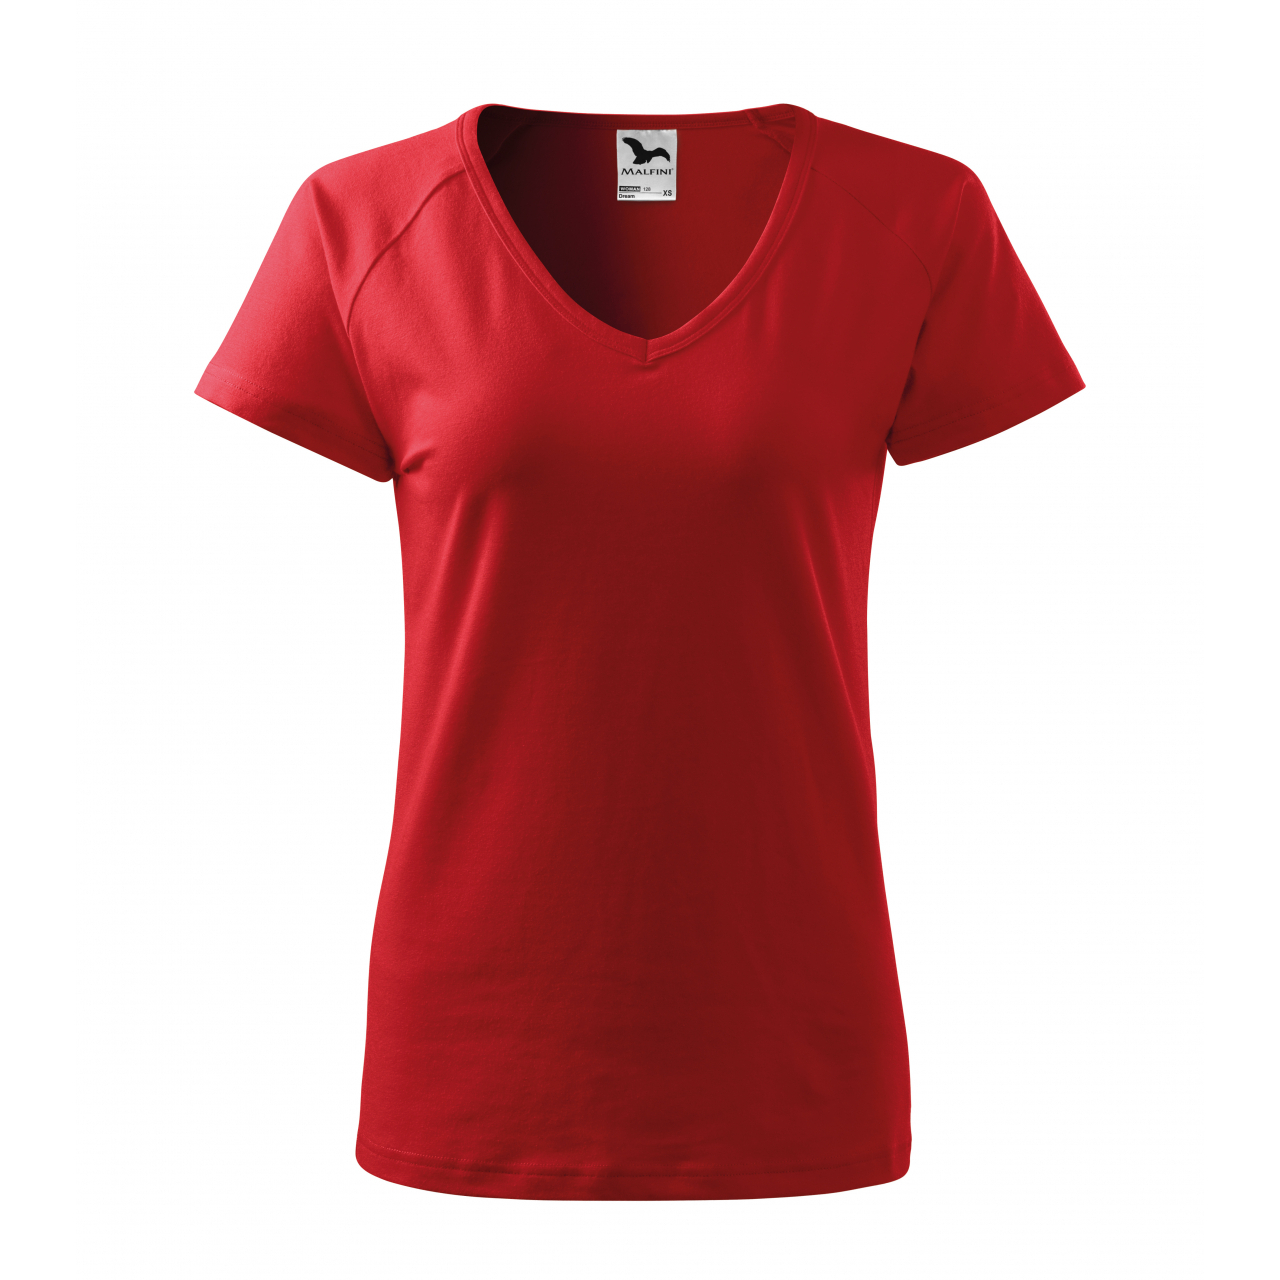 Triko dámské Malfini Dream - červené, XL